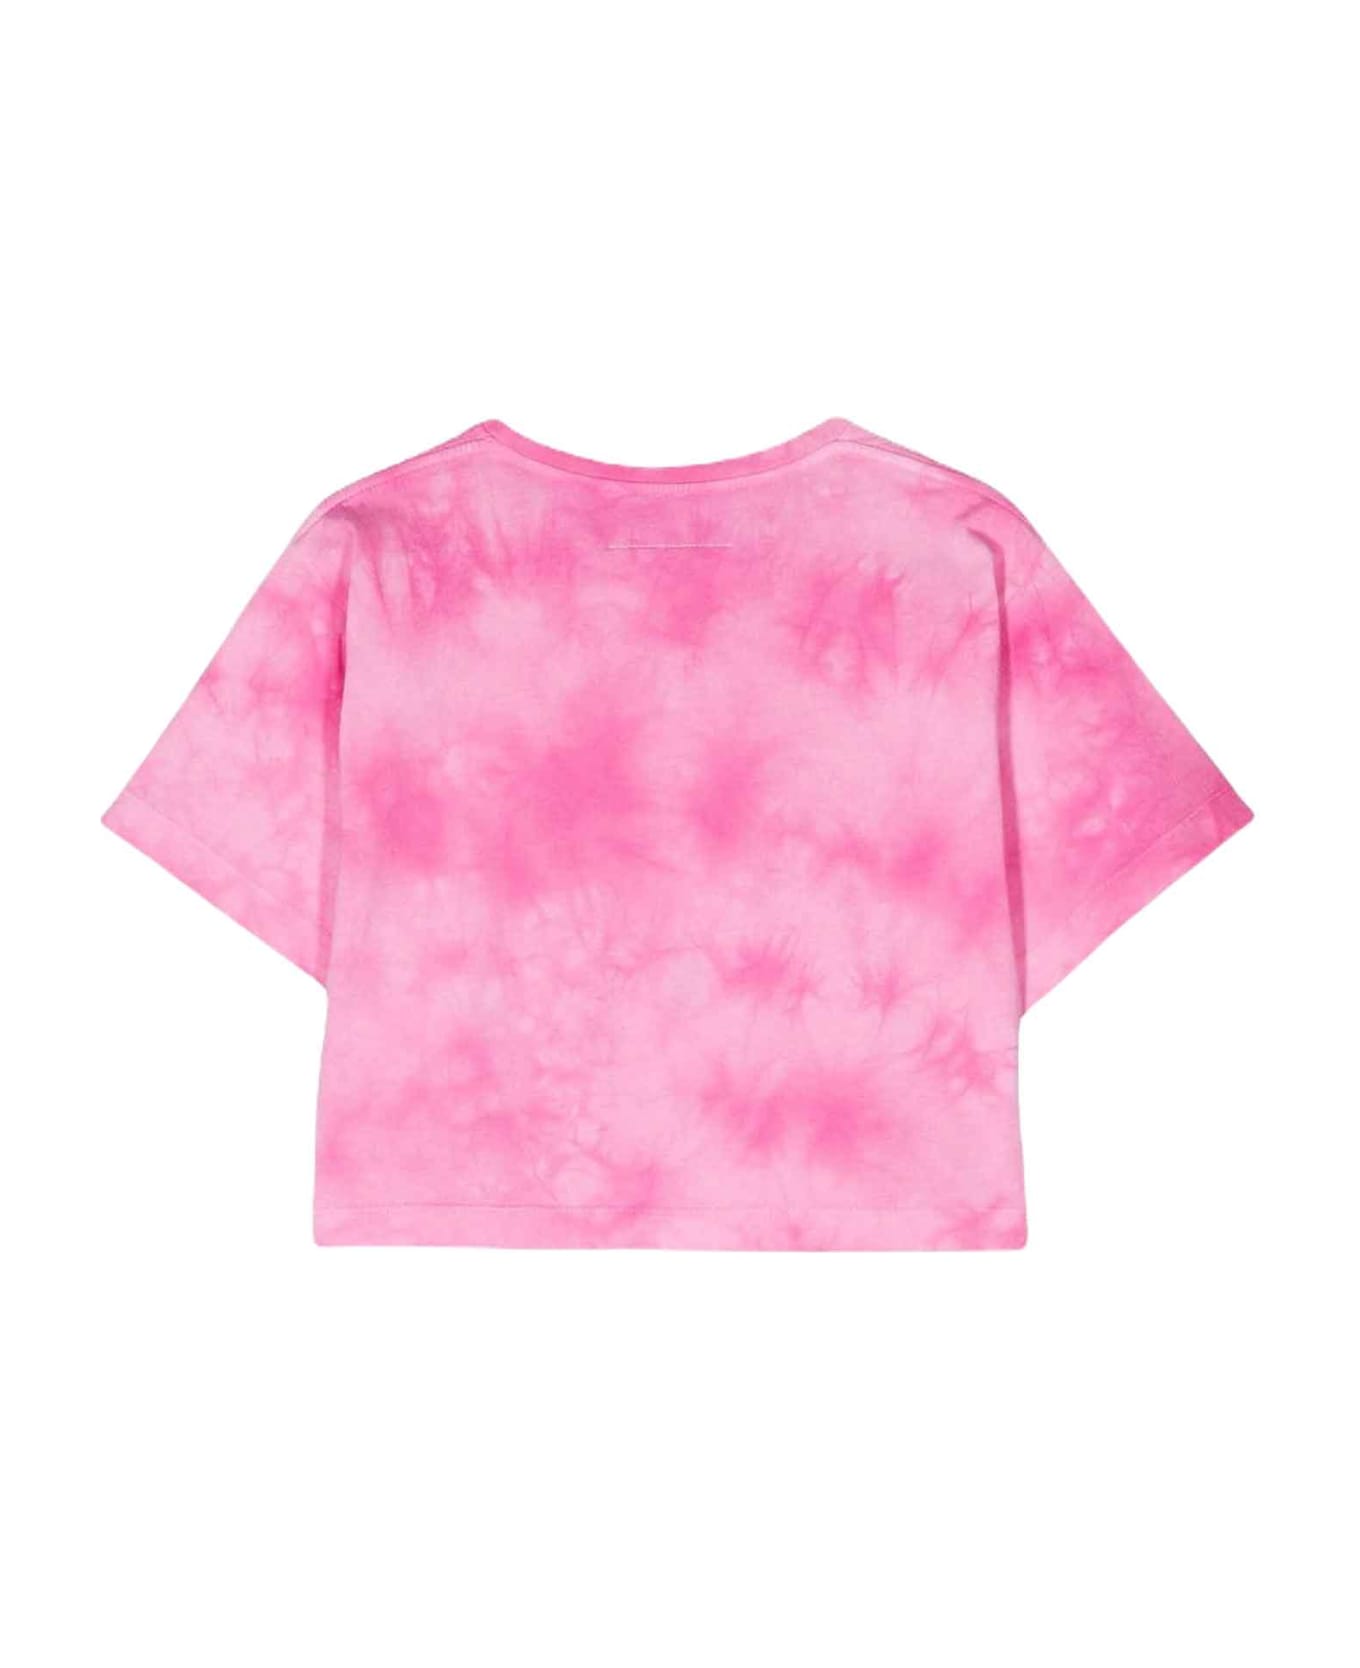 MM6 Maison Margiela Pink T-shirt Unisex - Rosa